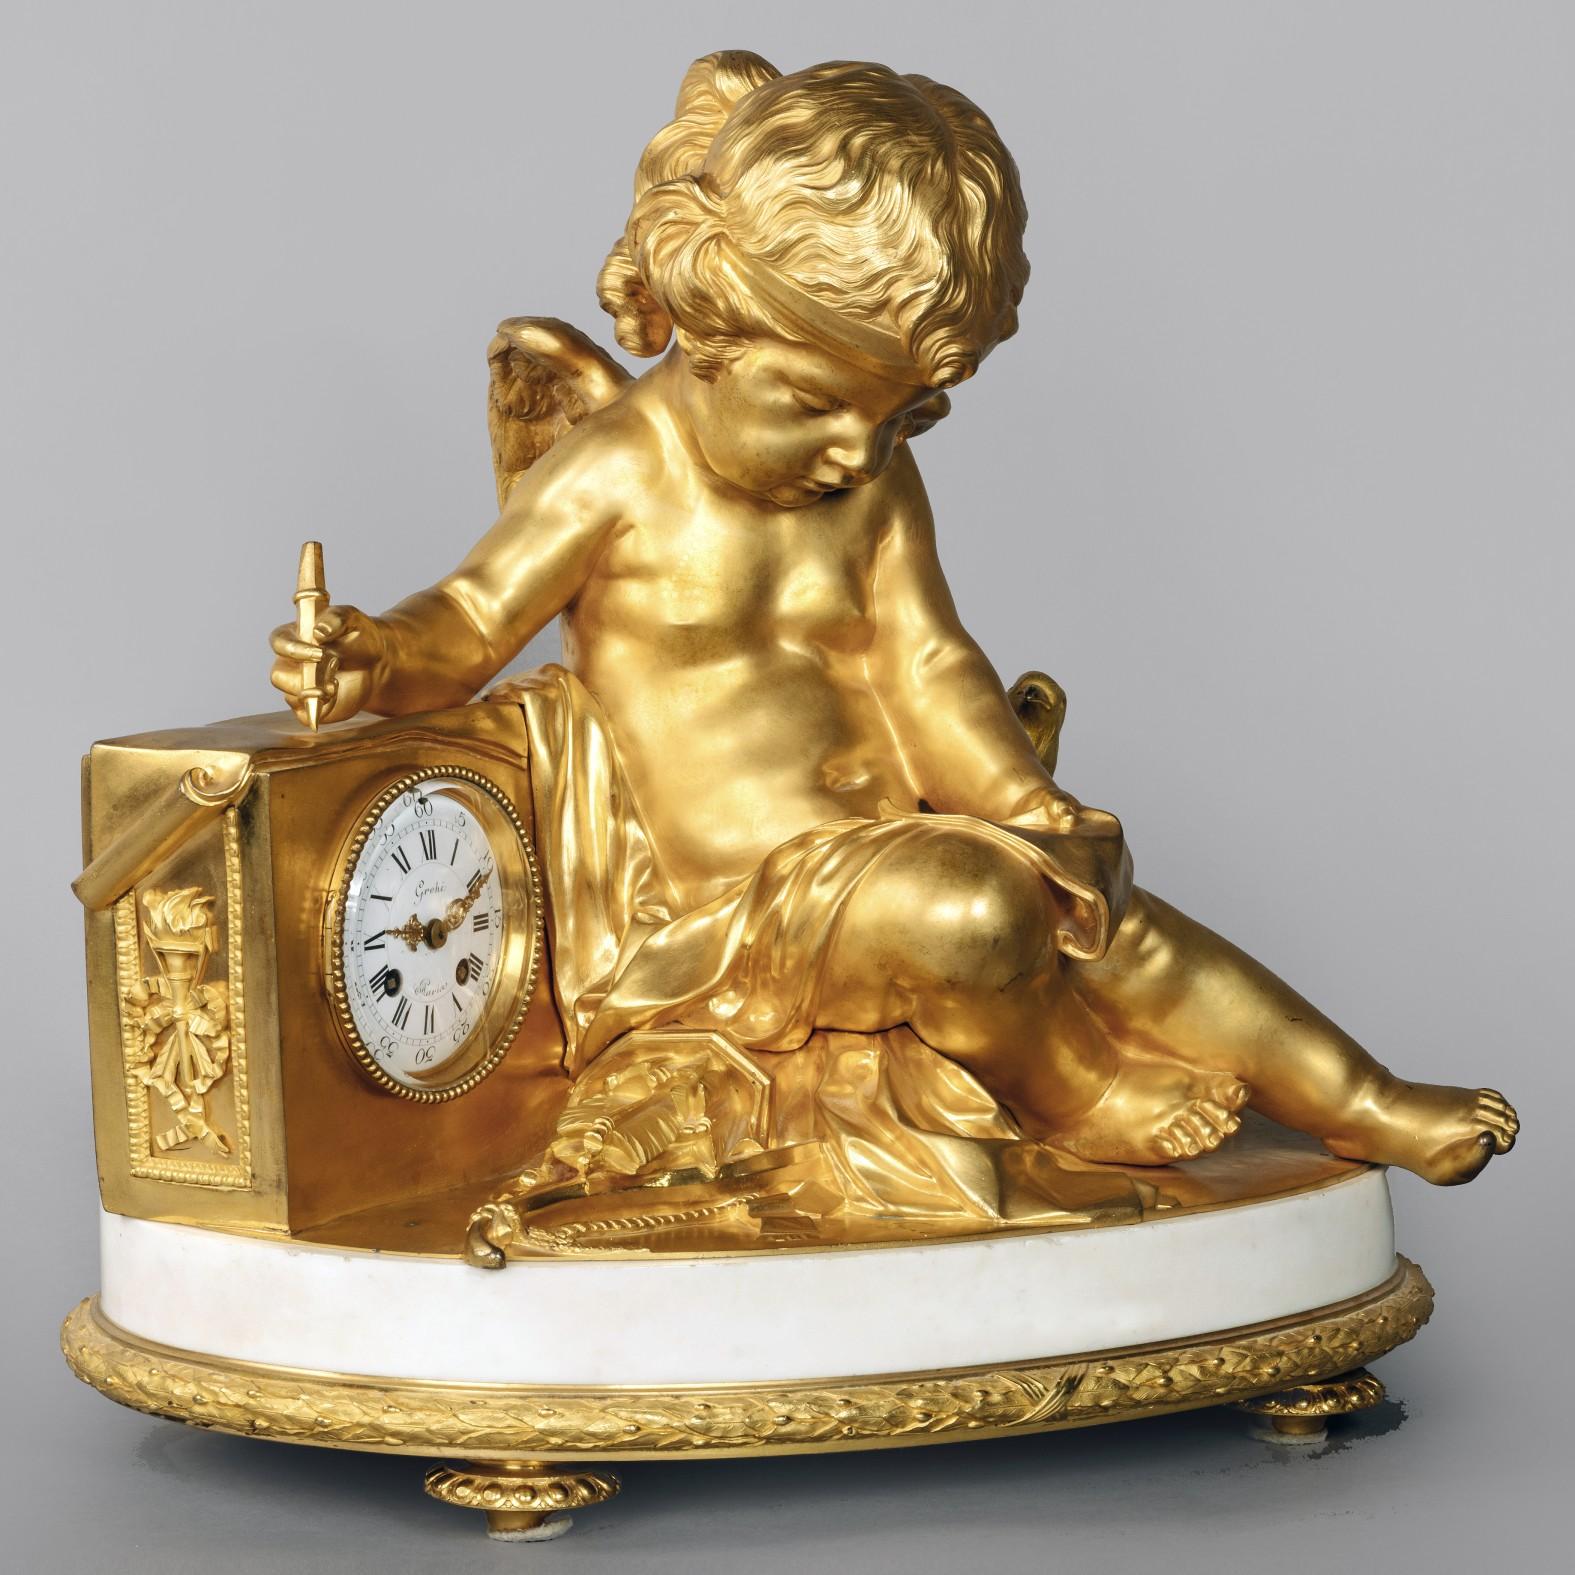 Eine große und außergewöhnliche figurale Kaminuhr im Louis XVI-Stil aus vergoldeter Bronze und weißem Marmor von Grohé Frères, Paris.

Das Zifferblatt ist mit 